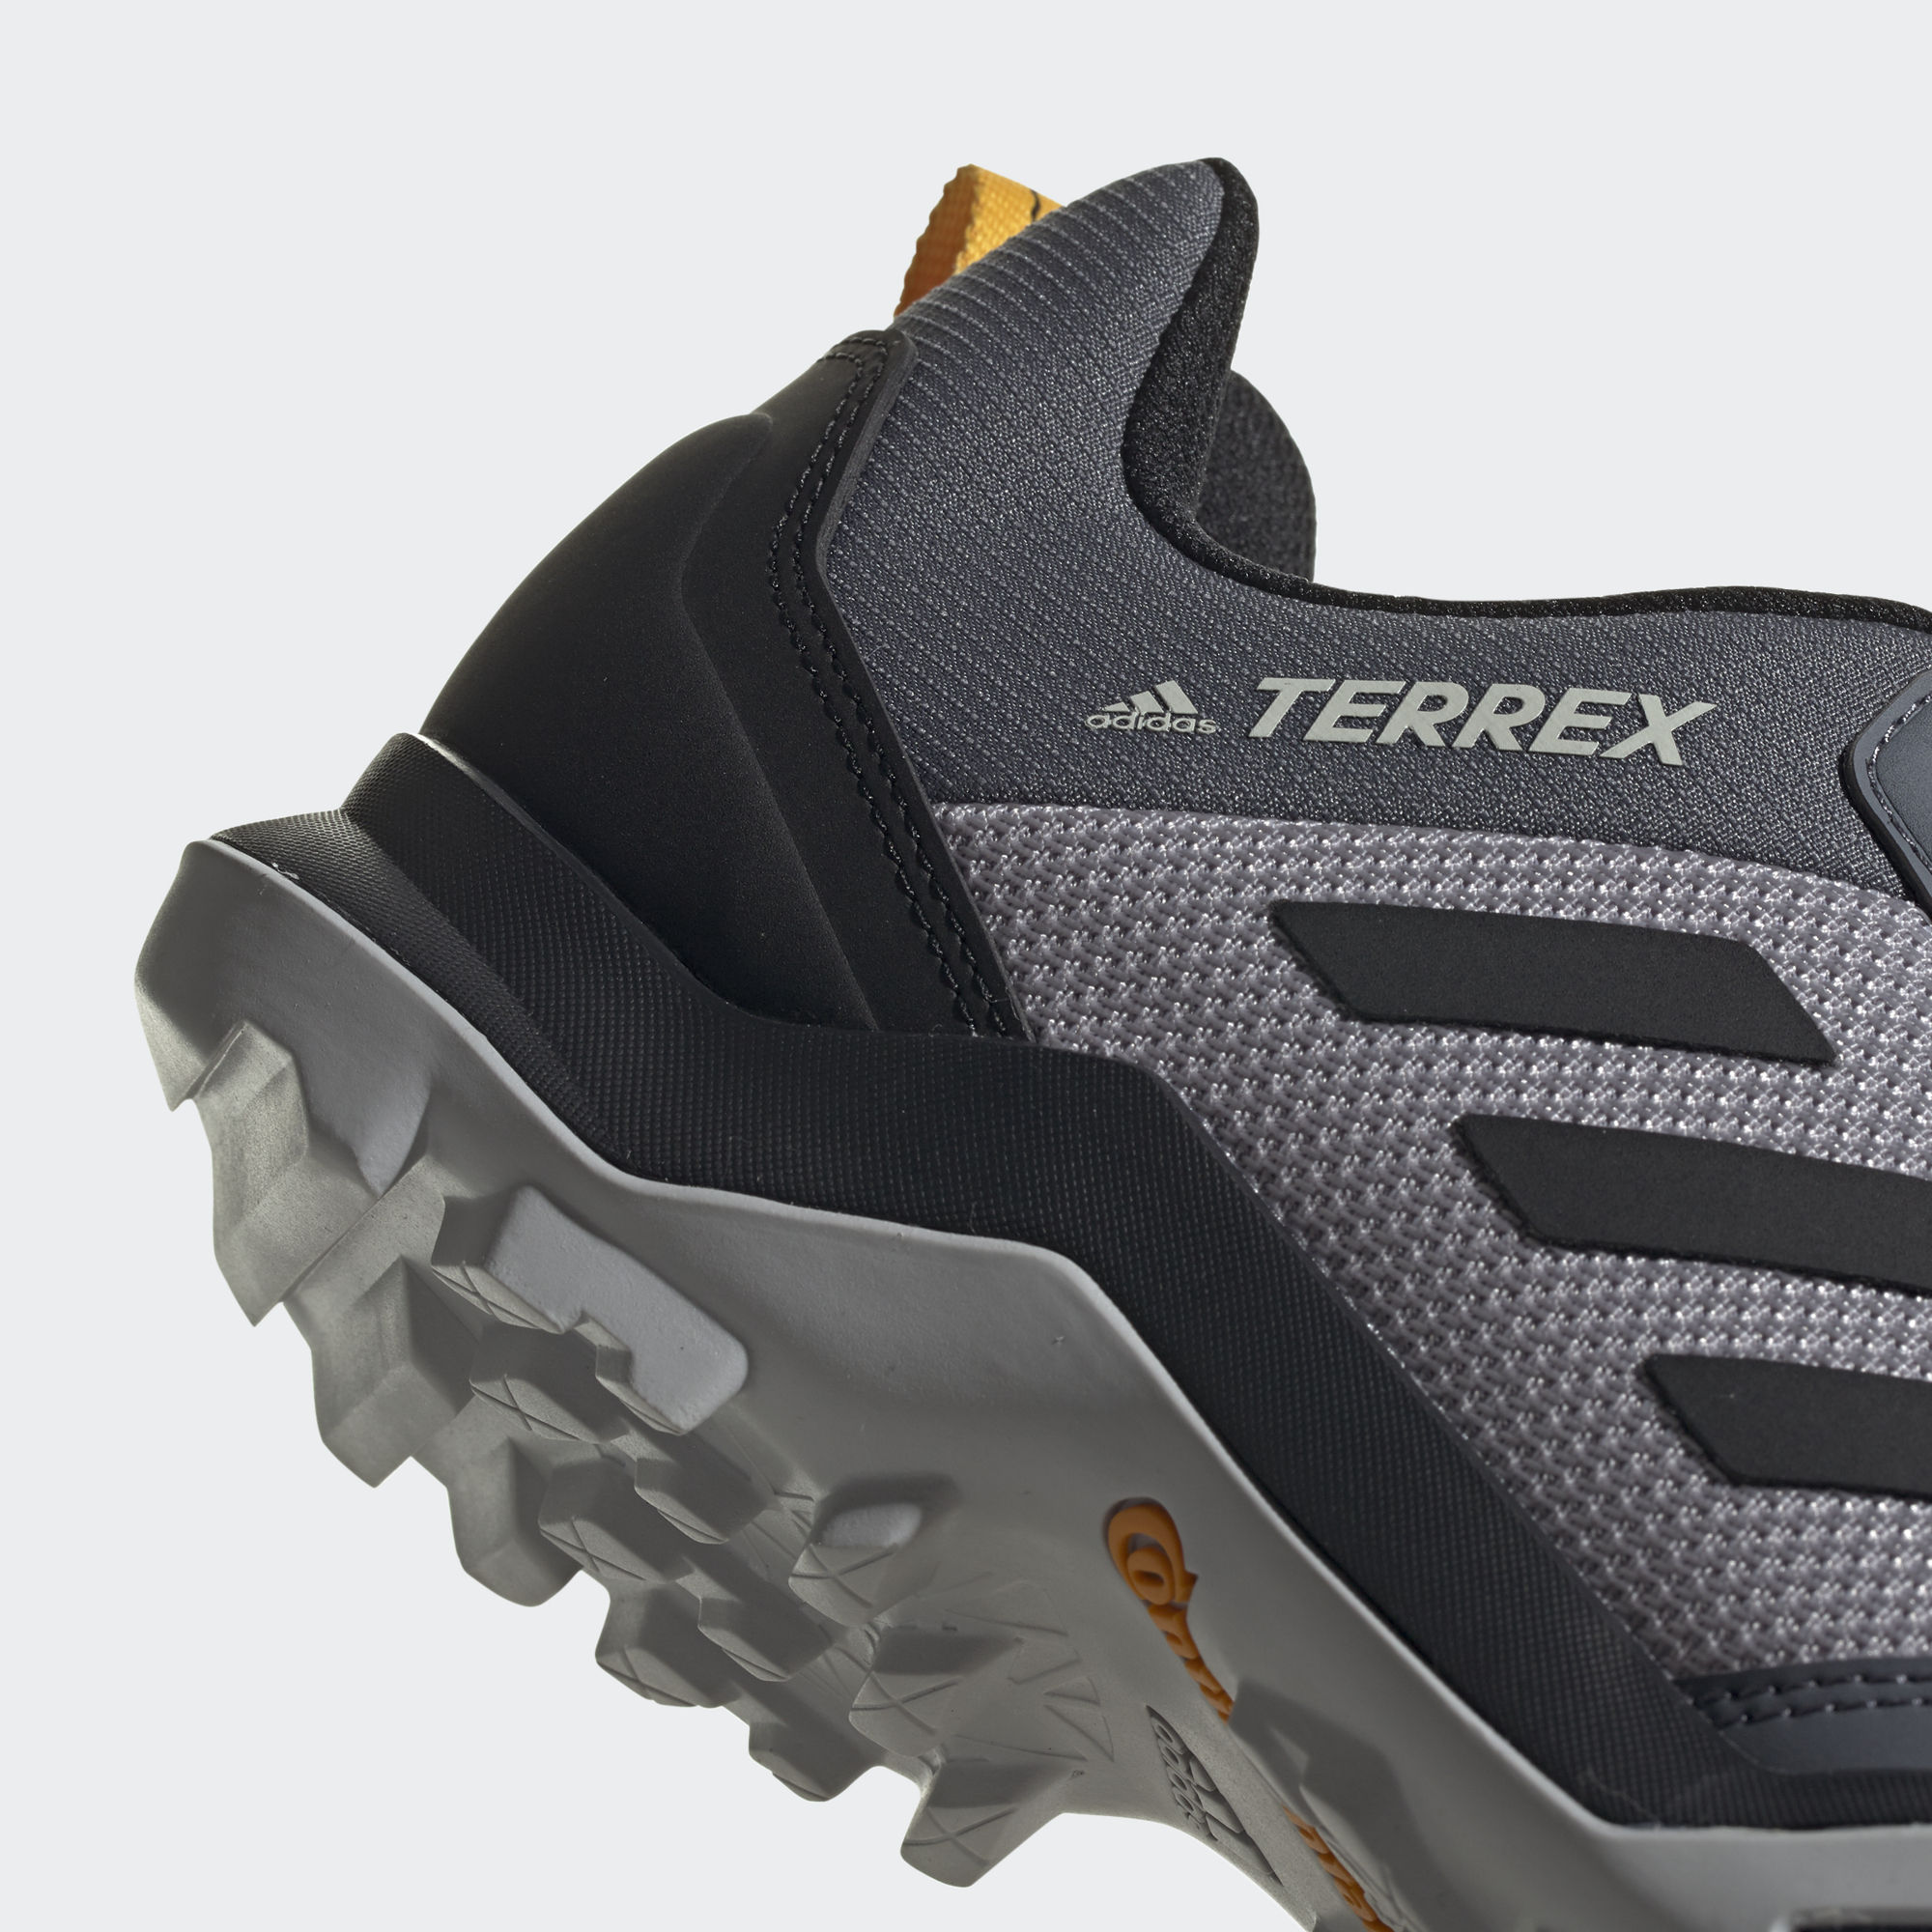 Adidas terrex ax3. Adidas Terrex ax3 Hiking. Adidas Terrex ax3 черный. Terrex ax3 Hiking Shoes.